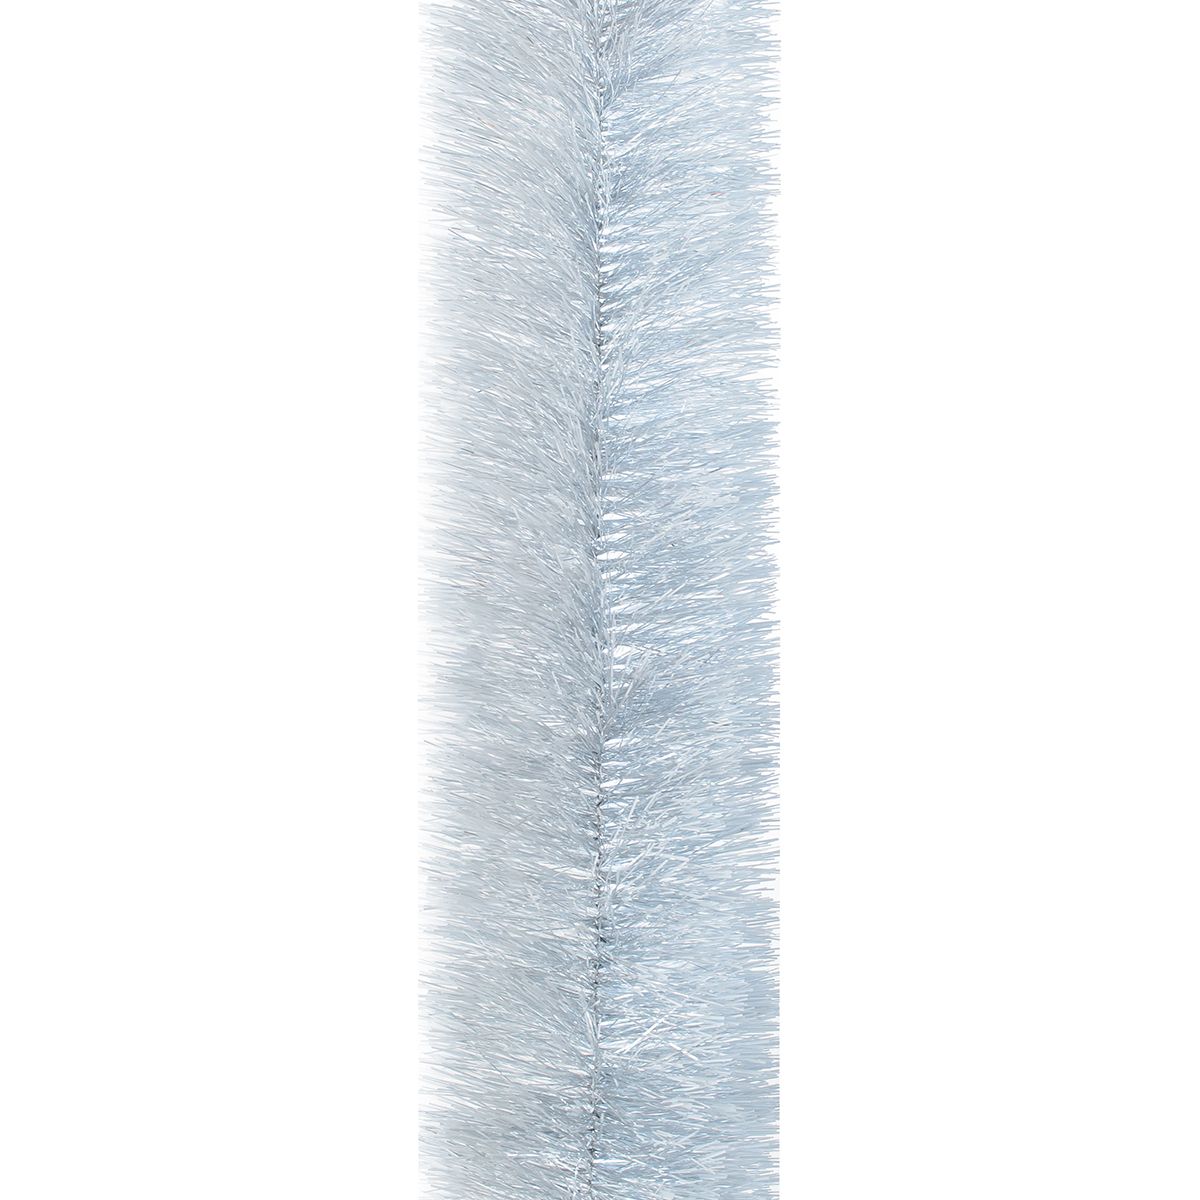 Мішура Novogod'ko 10 см 3 м срібло з білими кінчиками (980333) - фото 1